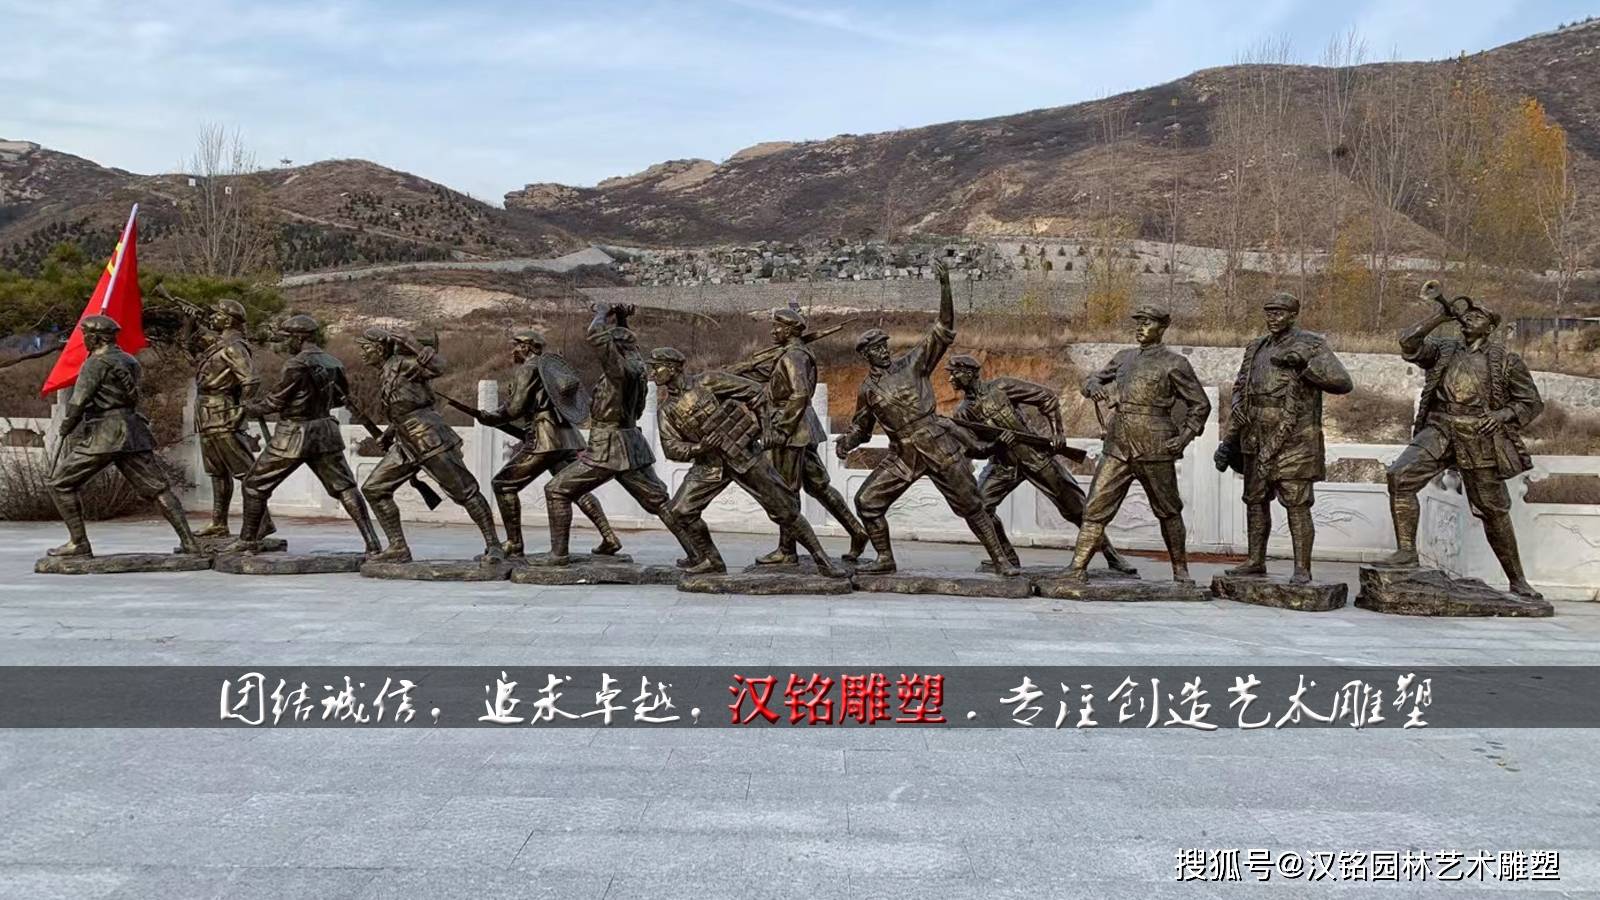 红军人物雕塑 中国人民解放军雕塑 红色文化雕塑 长征雕塑 抗日战争